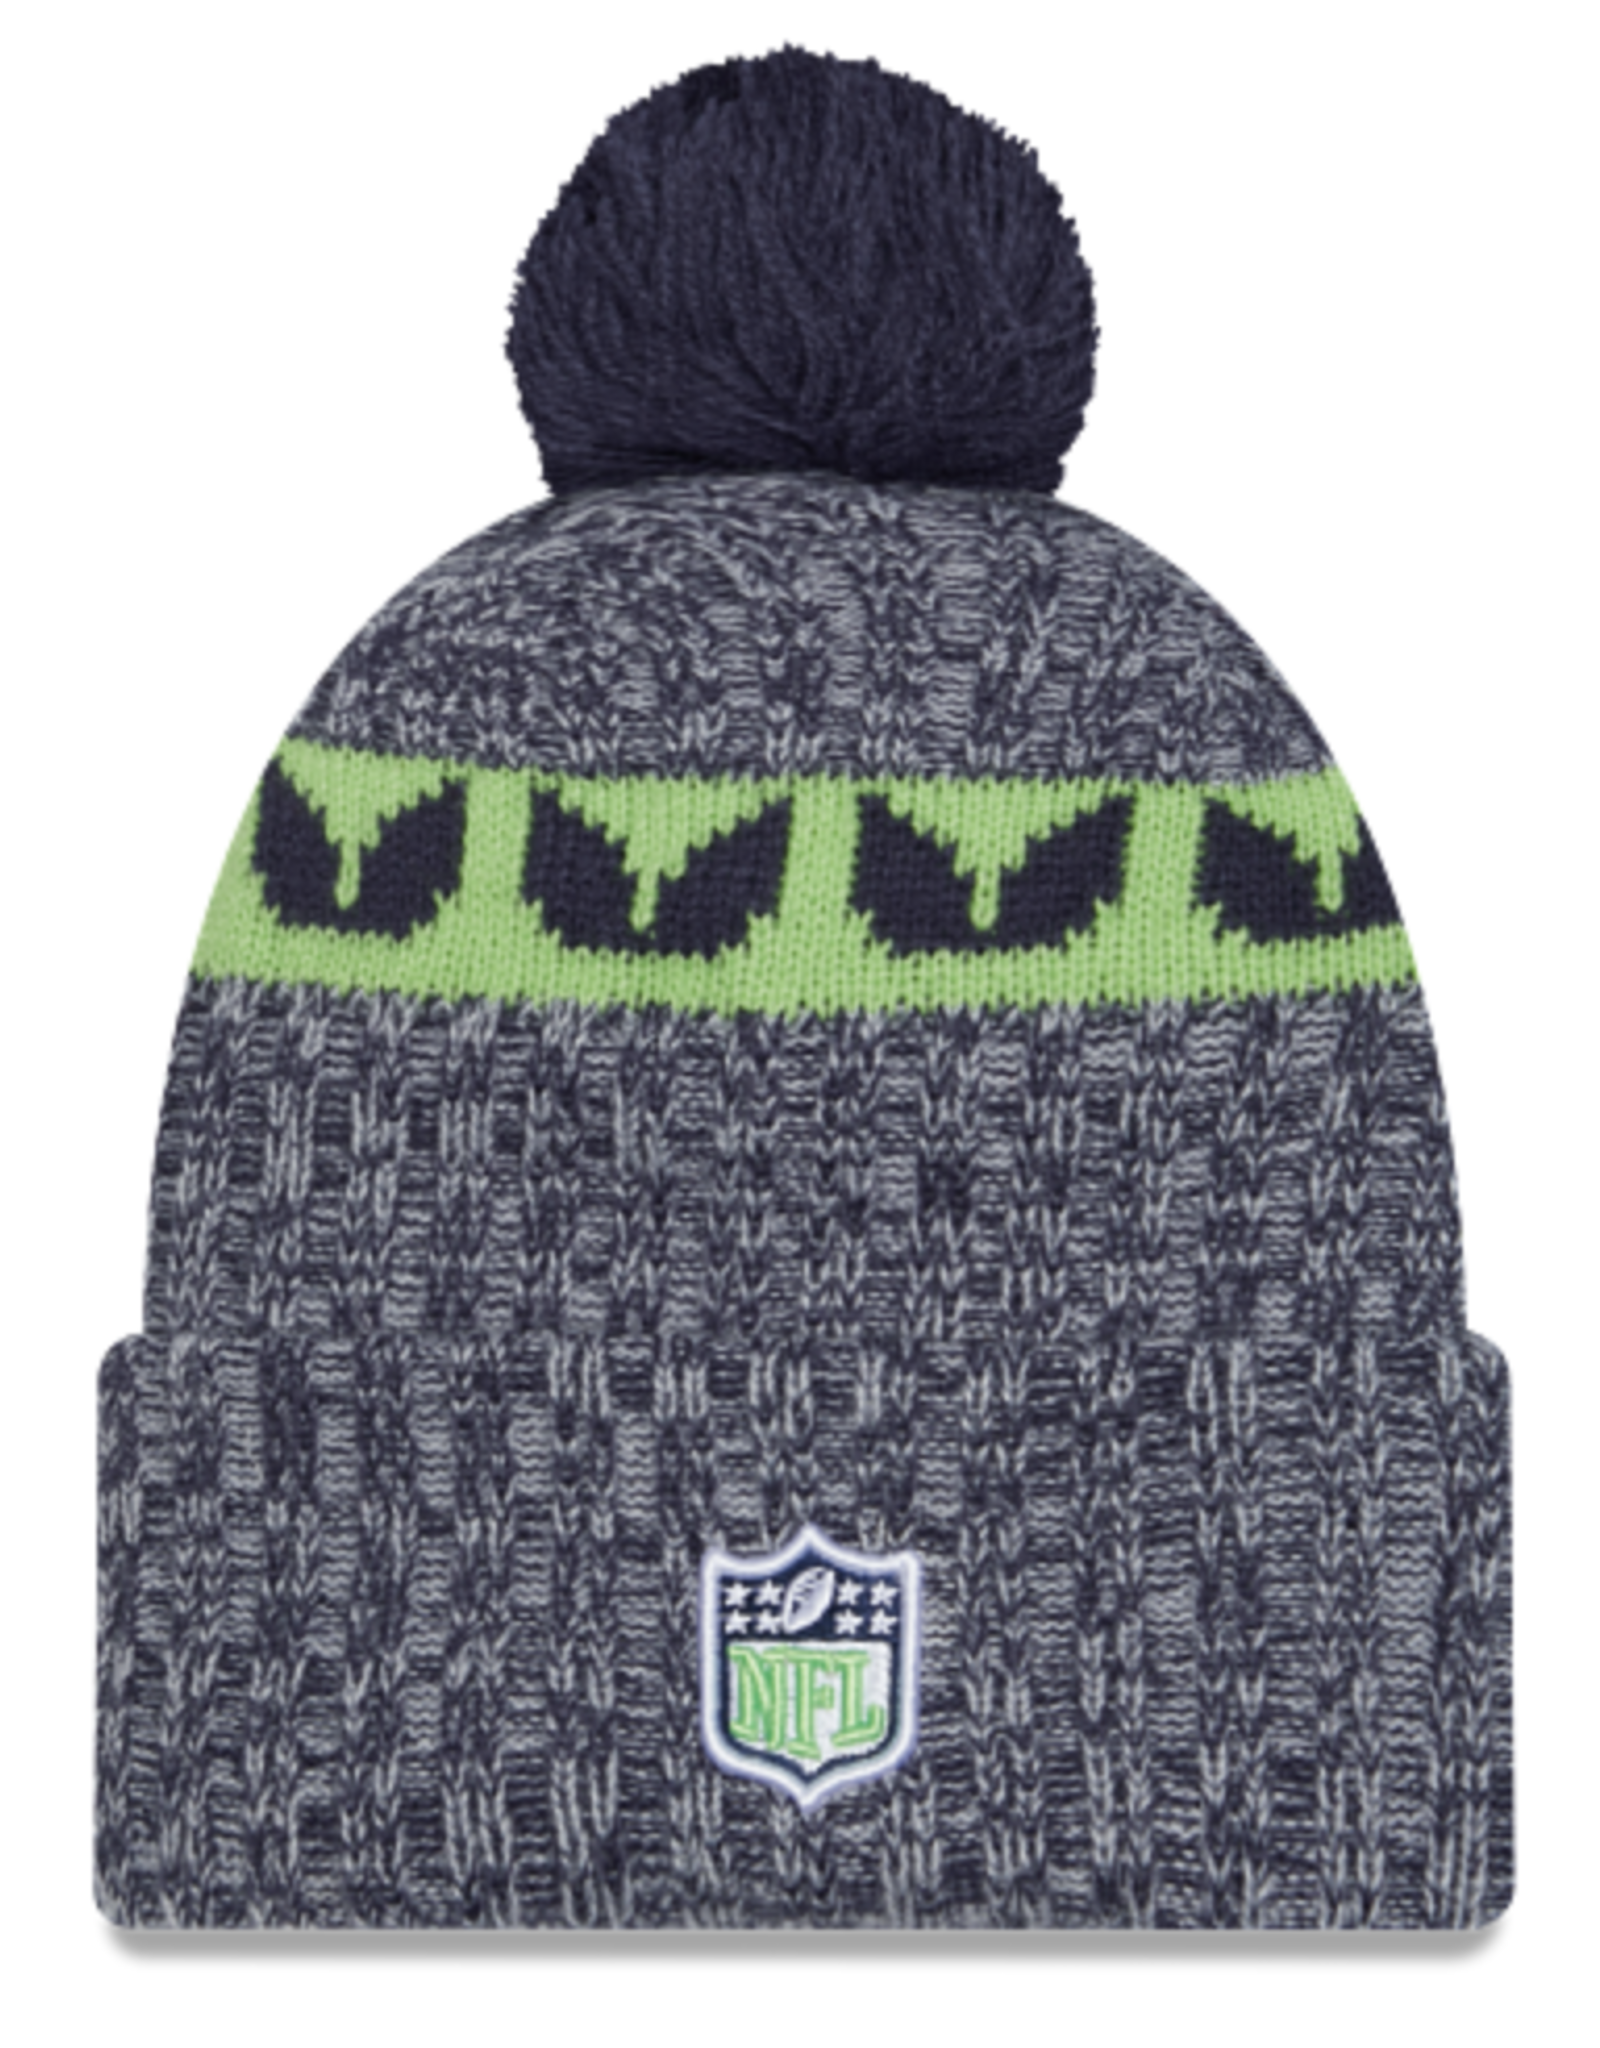 New Era Seattle Seahawks NFL23 OnField Sideline Sport Knit Hat